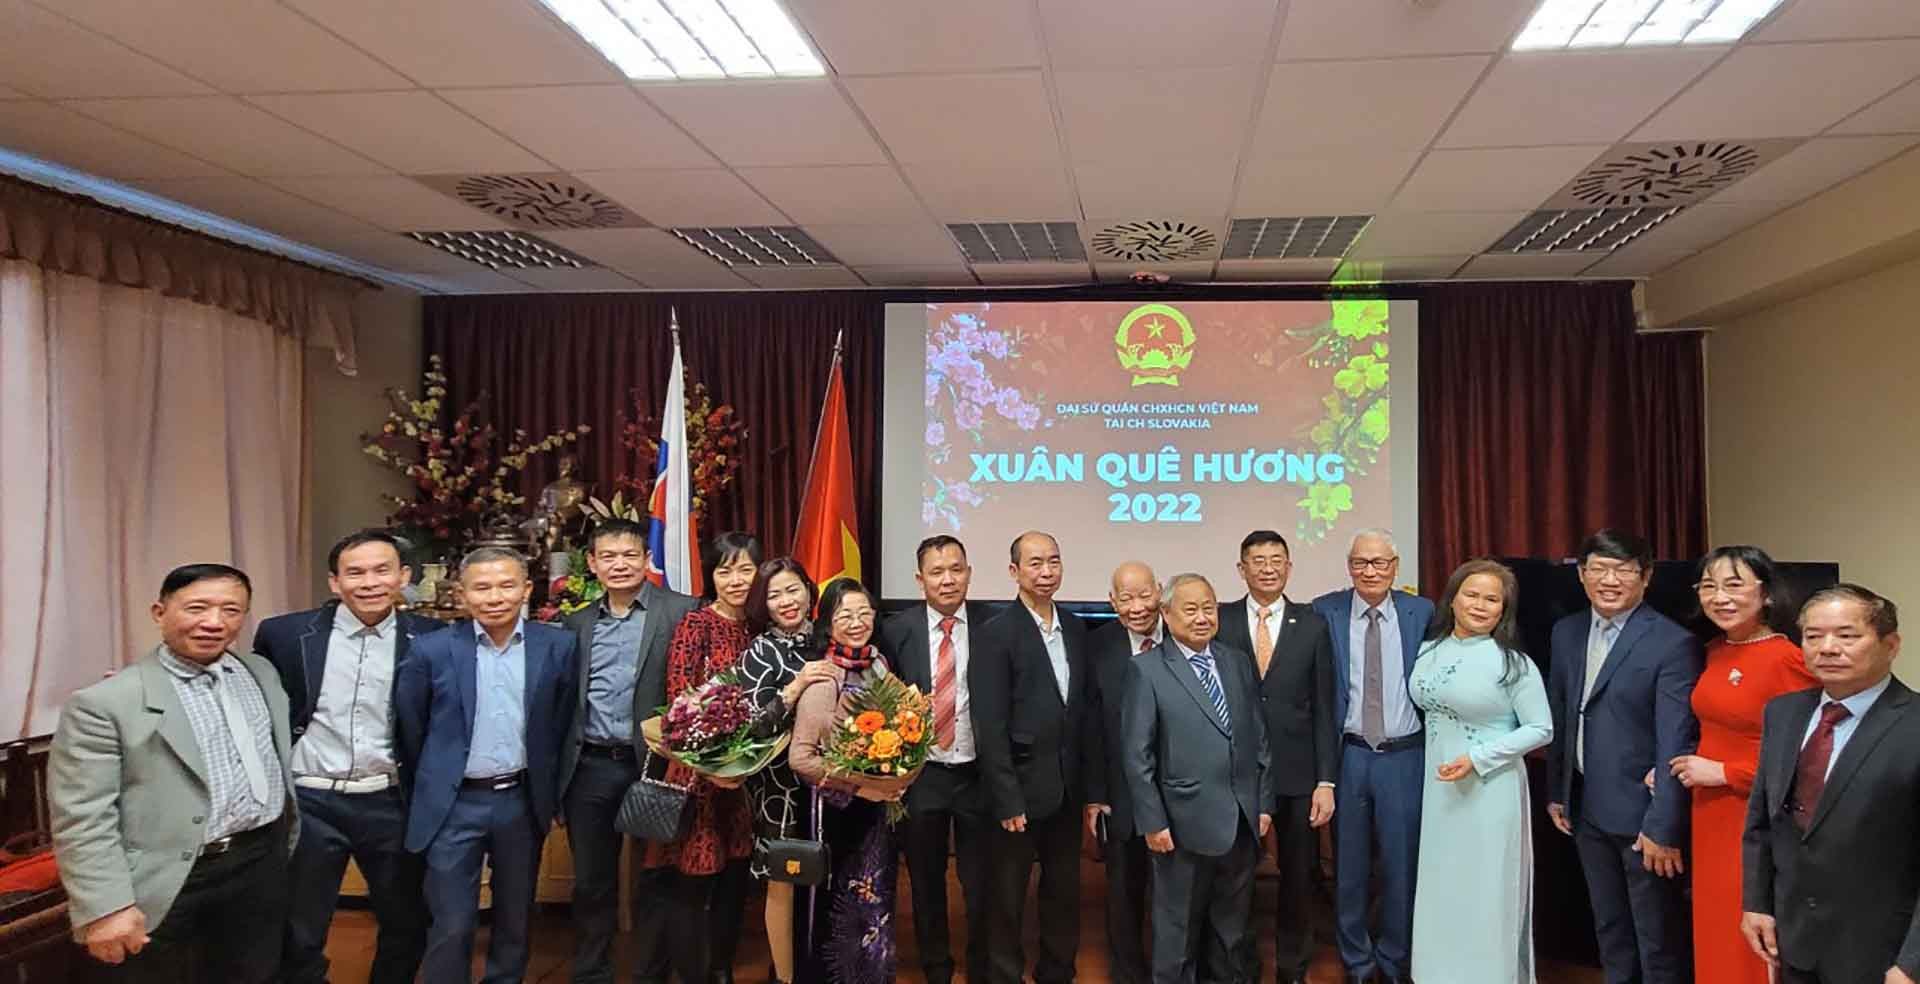 Tham dự chương trình có sự tham gia của Hội người Việt Nam tại Slovakia, bạn bè quốc tế cùng nhiều bà con kiều bào đang sinh sống, học tập và làm việc tại Slovakia.